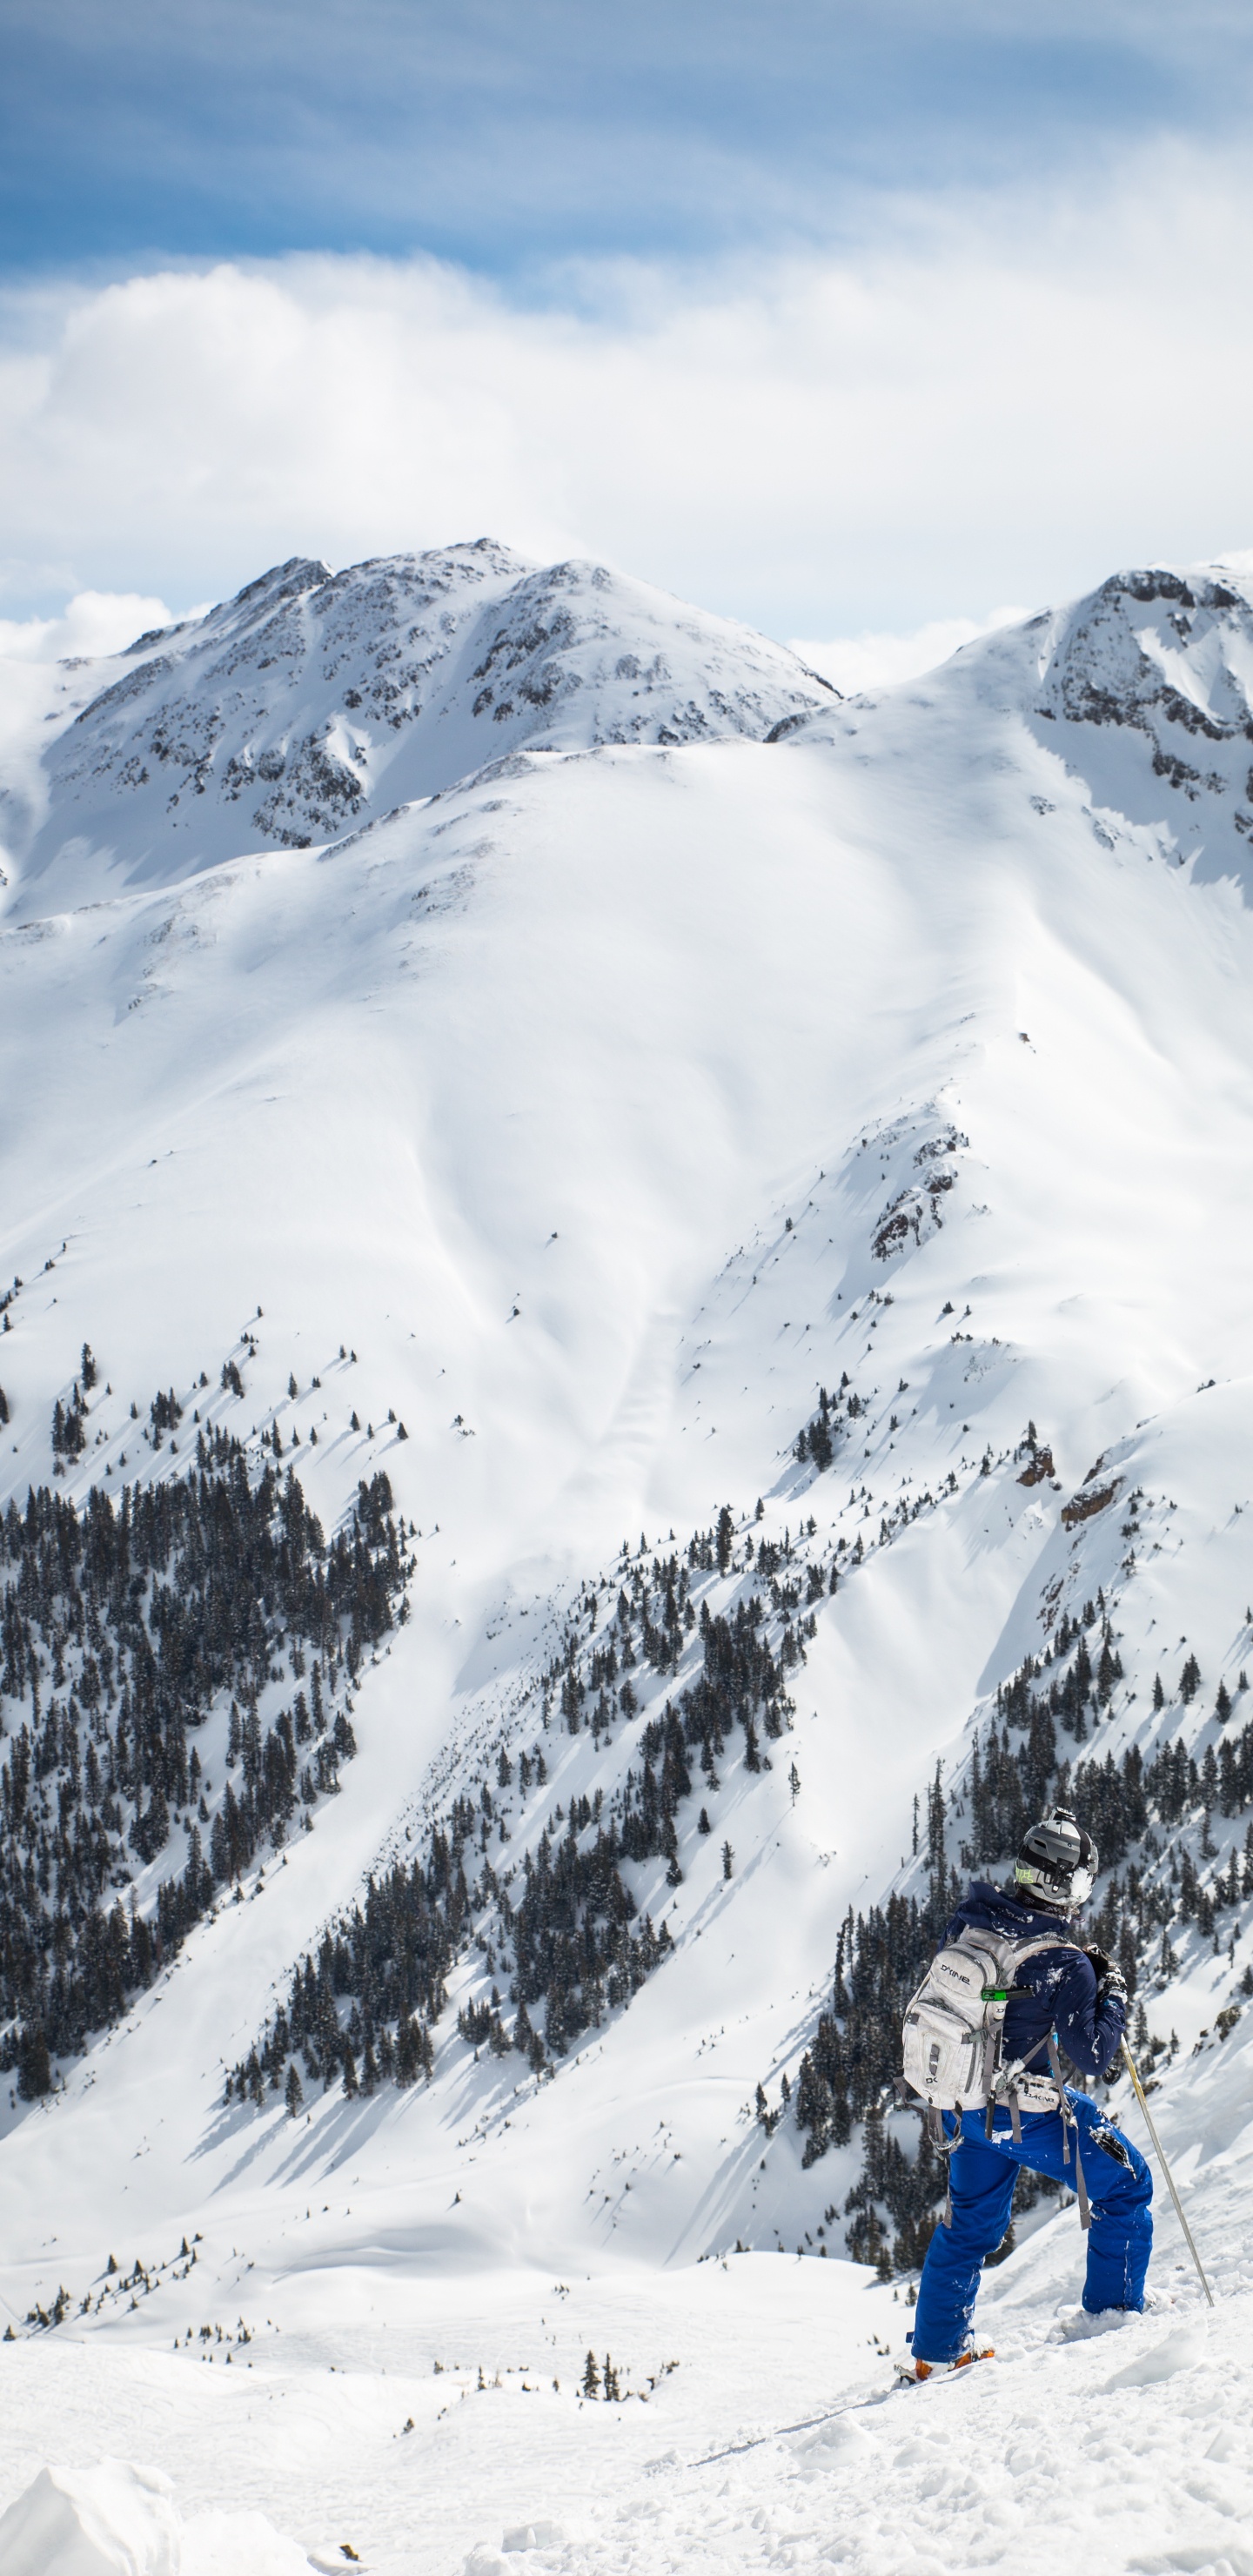 Personne à Cheval Sur le Ski de Neige Sur la Montagne Couverte de Neige Pendant la Journée. Wallpaper in 1440x2960 Resolution